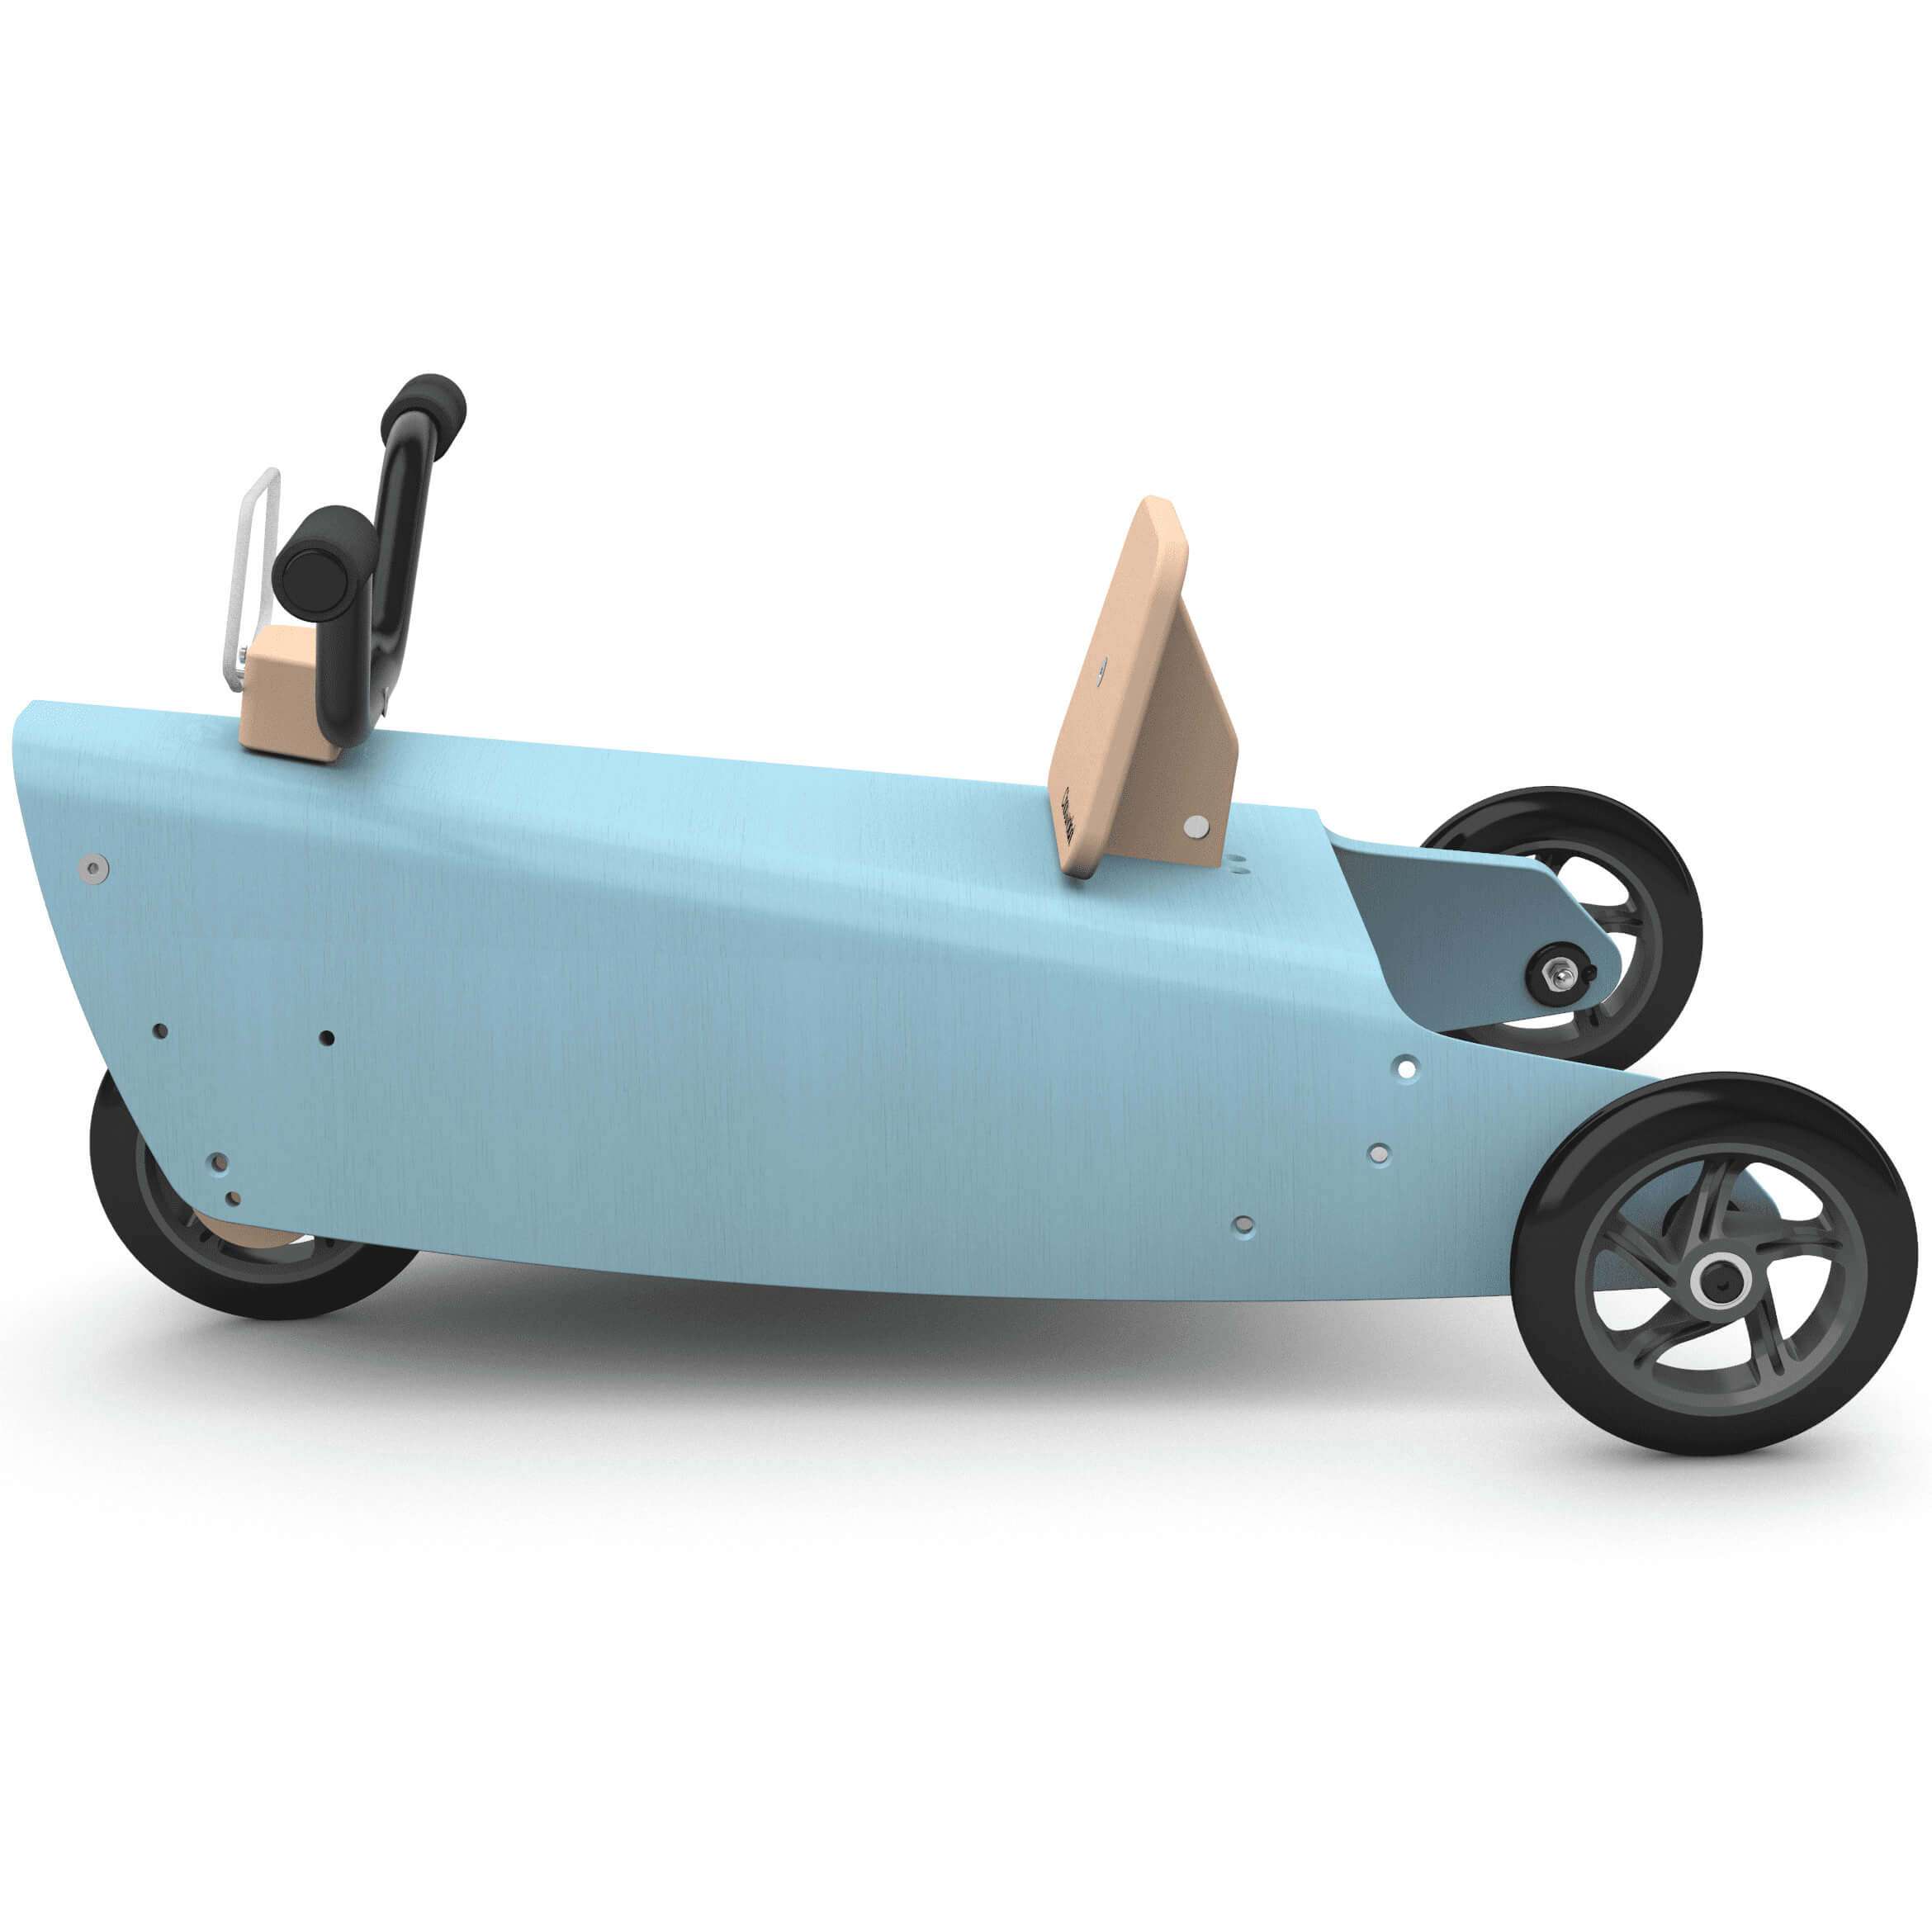 Porteur moto en bois design made in france bleu 2